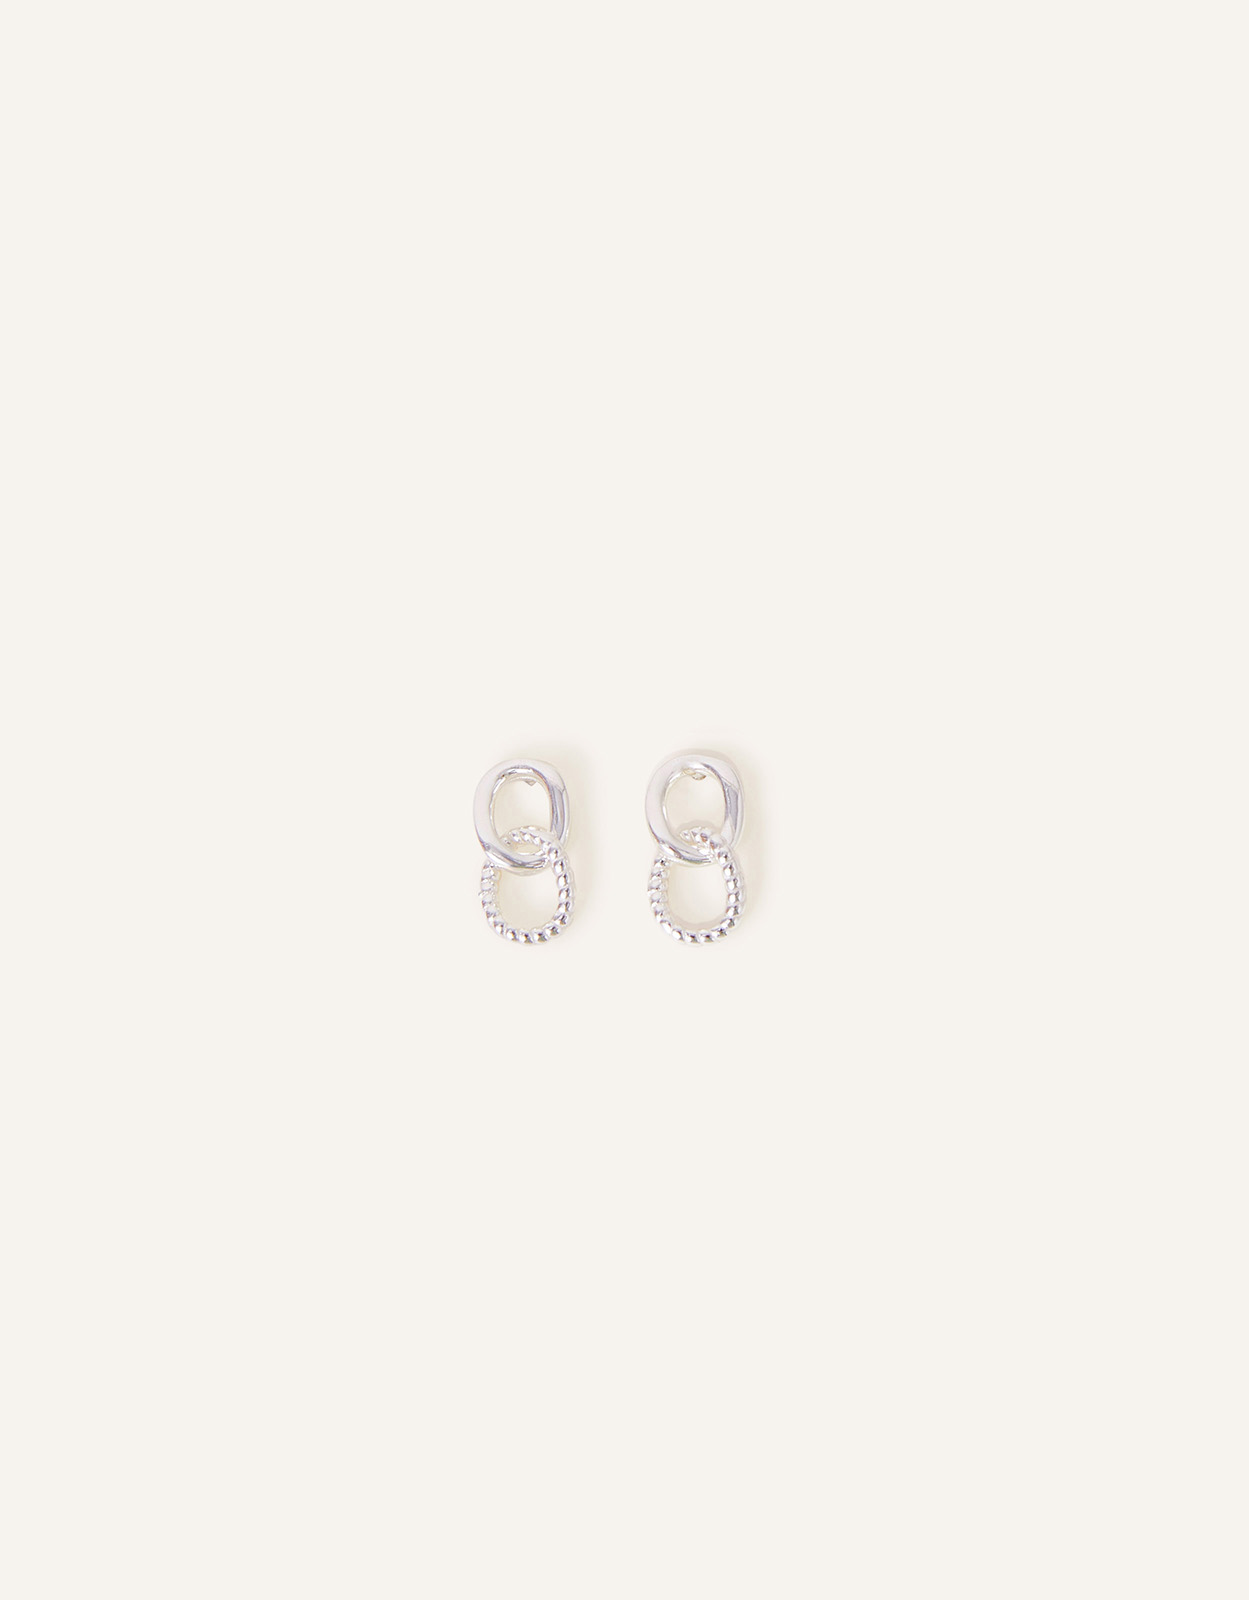 Accessorize Women's Sterling Silver Twist Drop Earrings, Size: 1cm